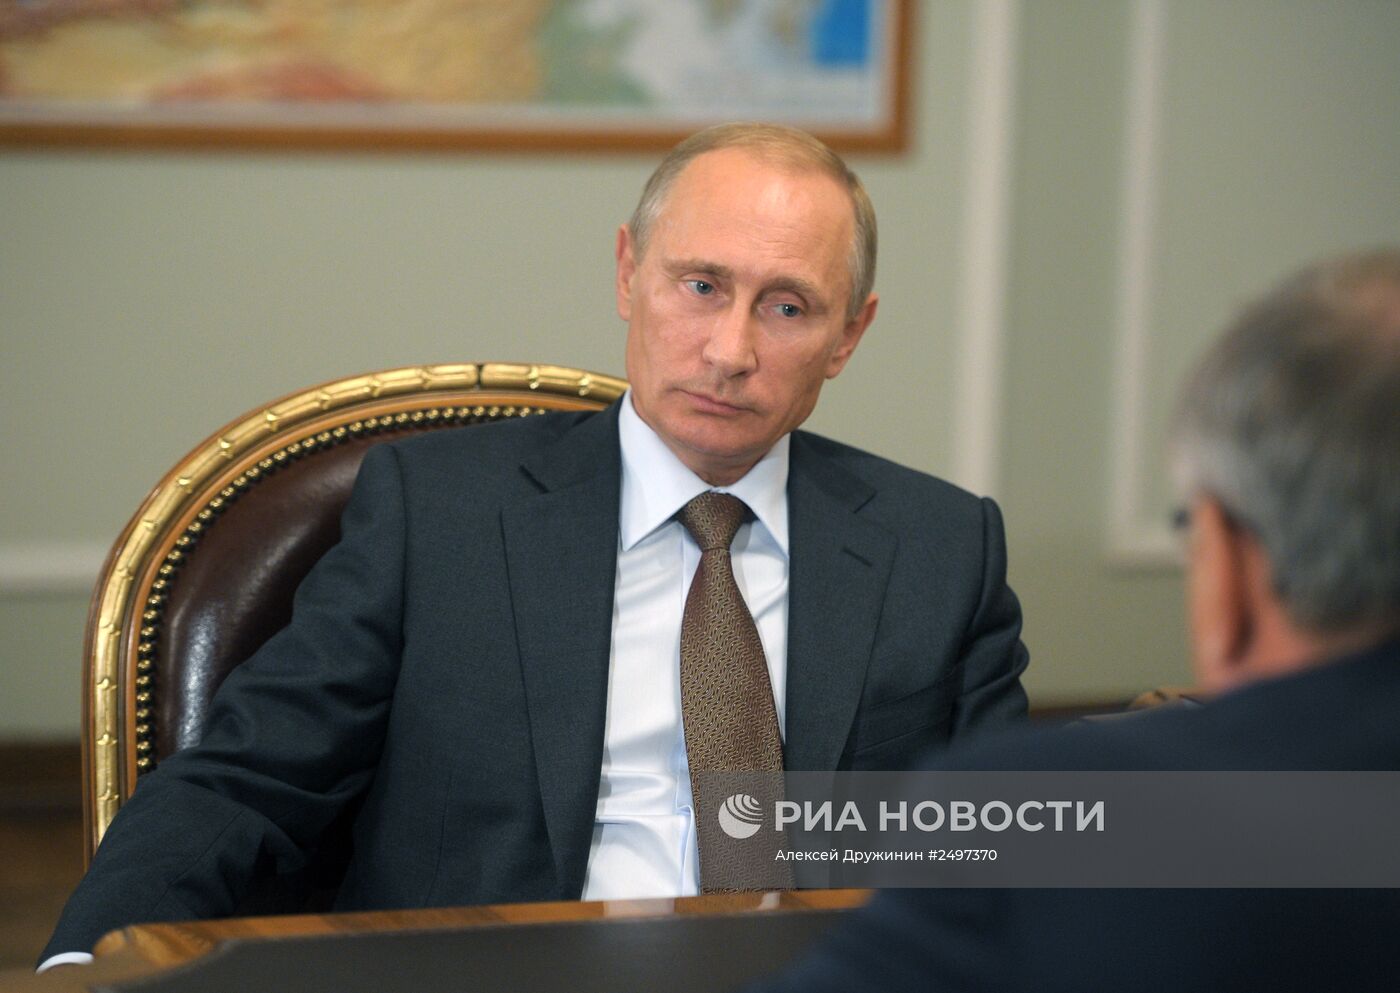 Встреча В.Путина с А.Костиным